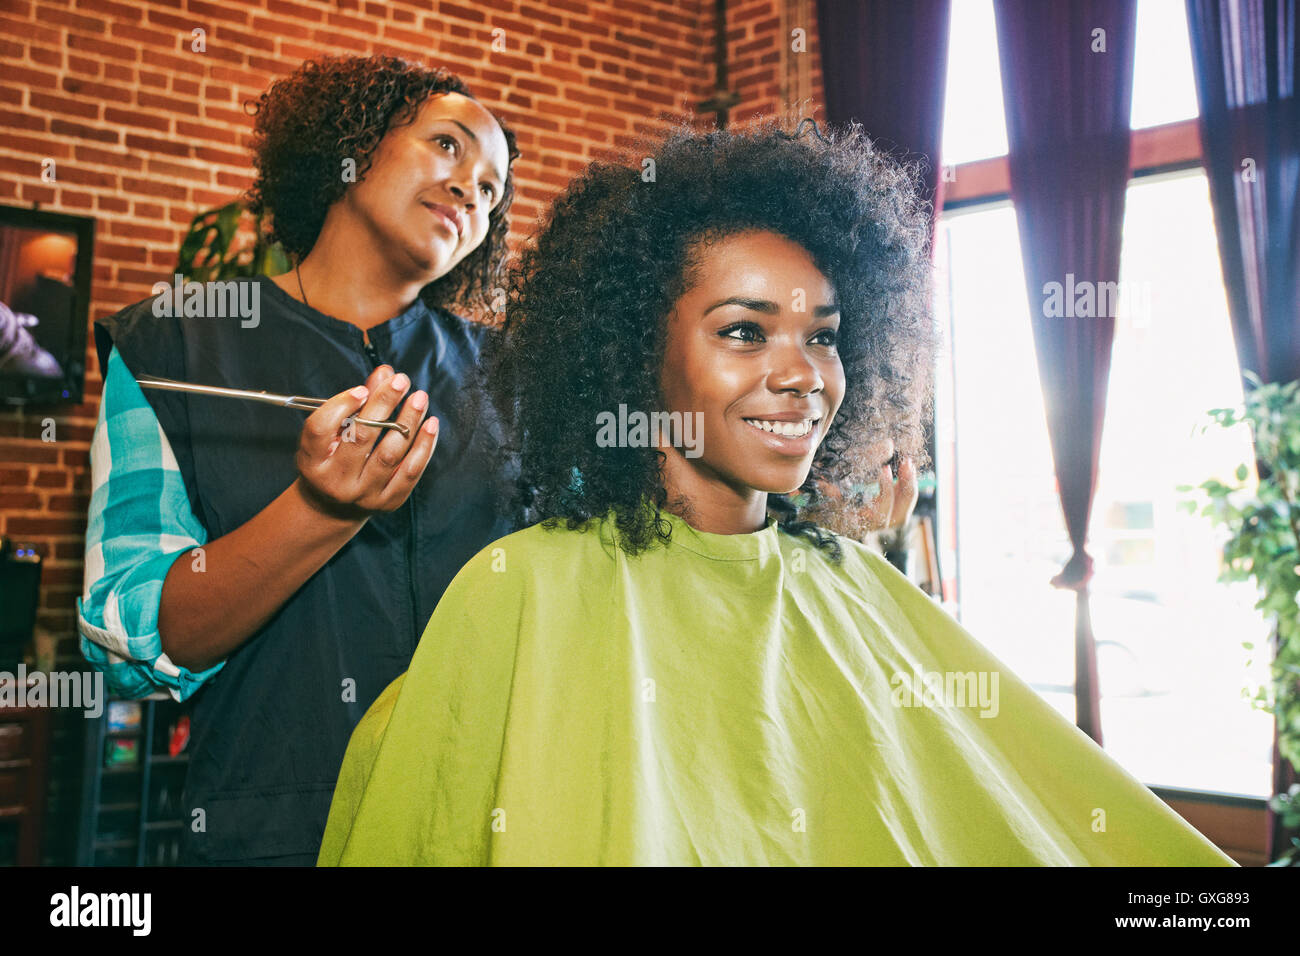 Smiling coiffure et client dans un salon de coiffure Banque D'Images